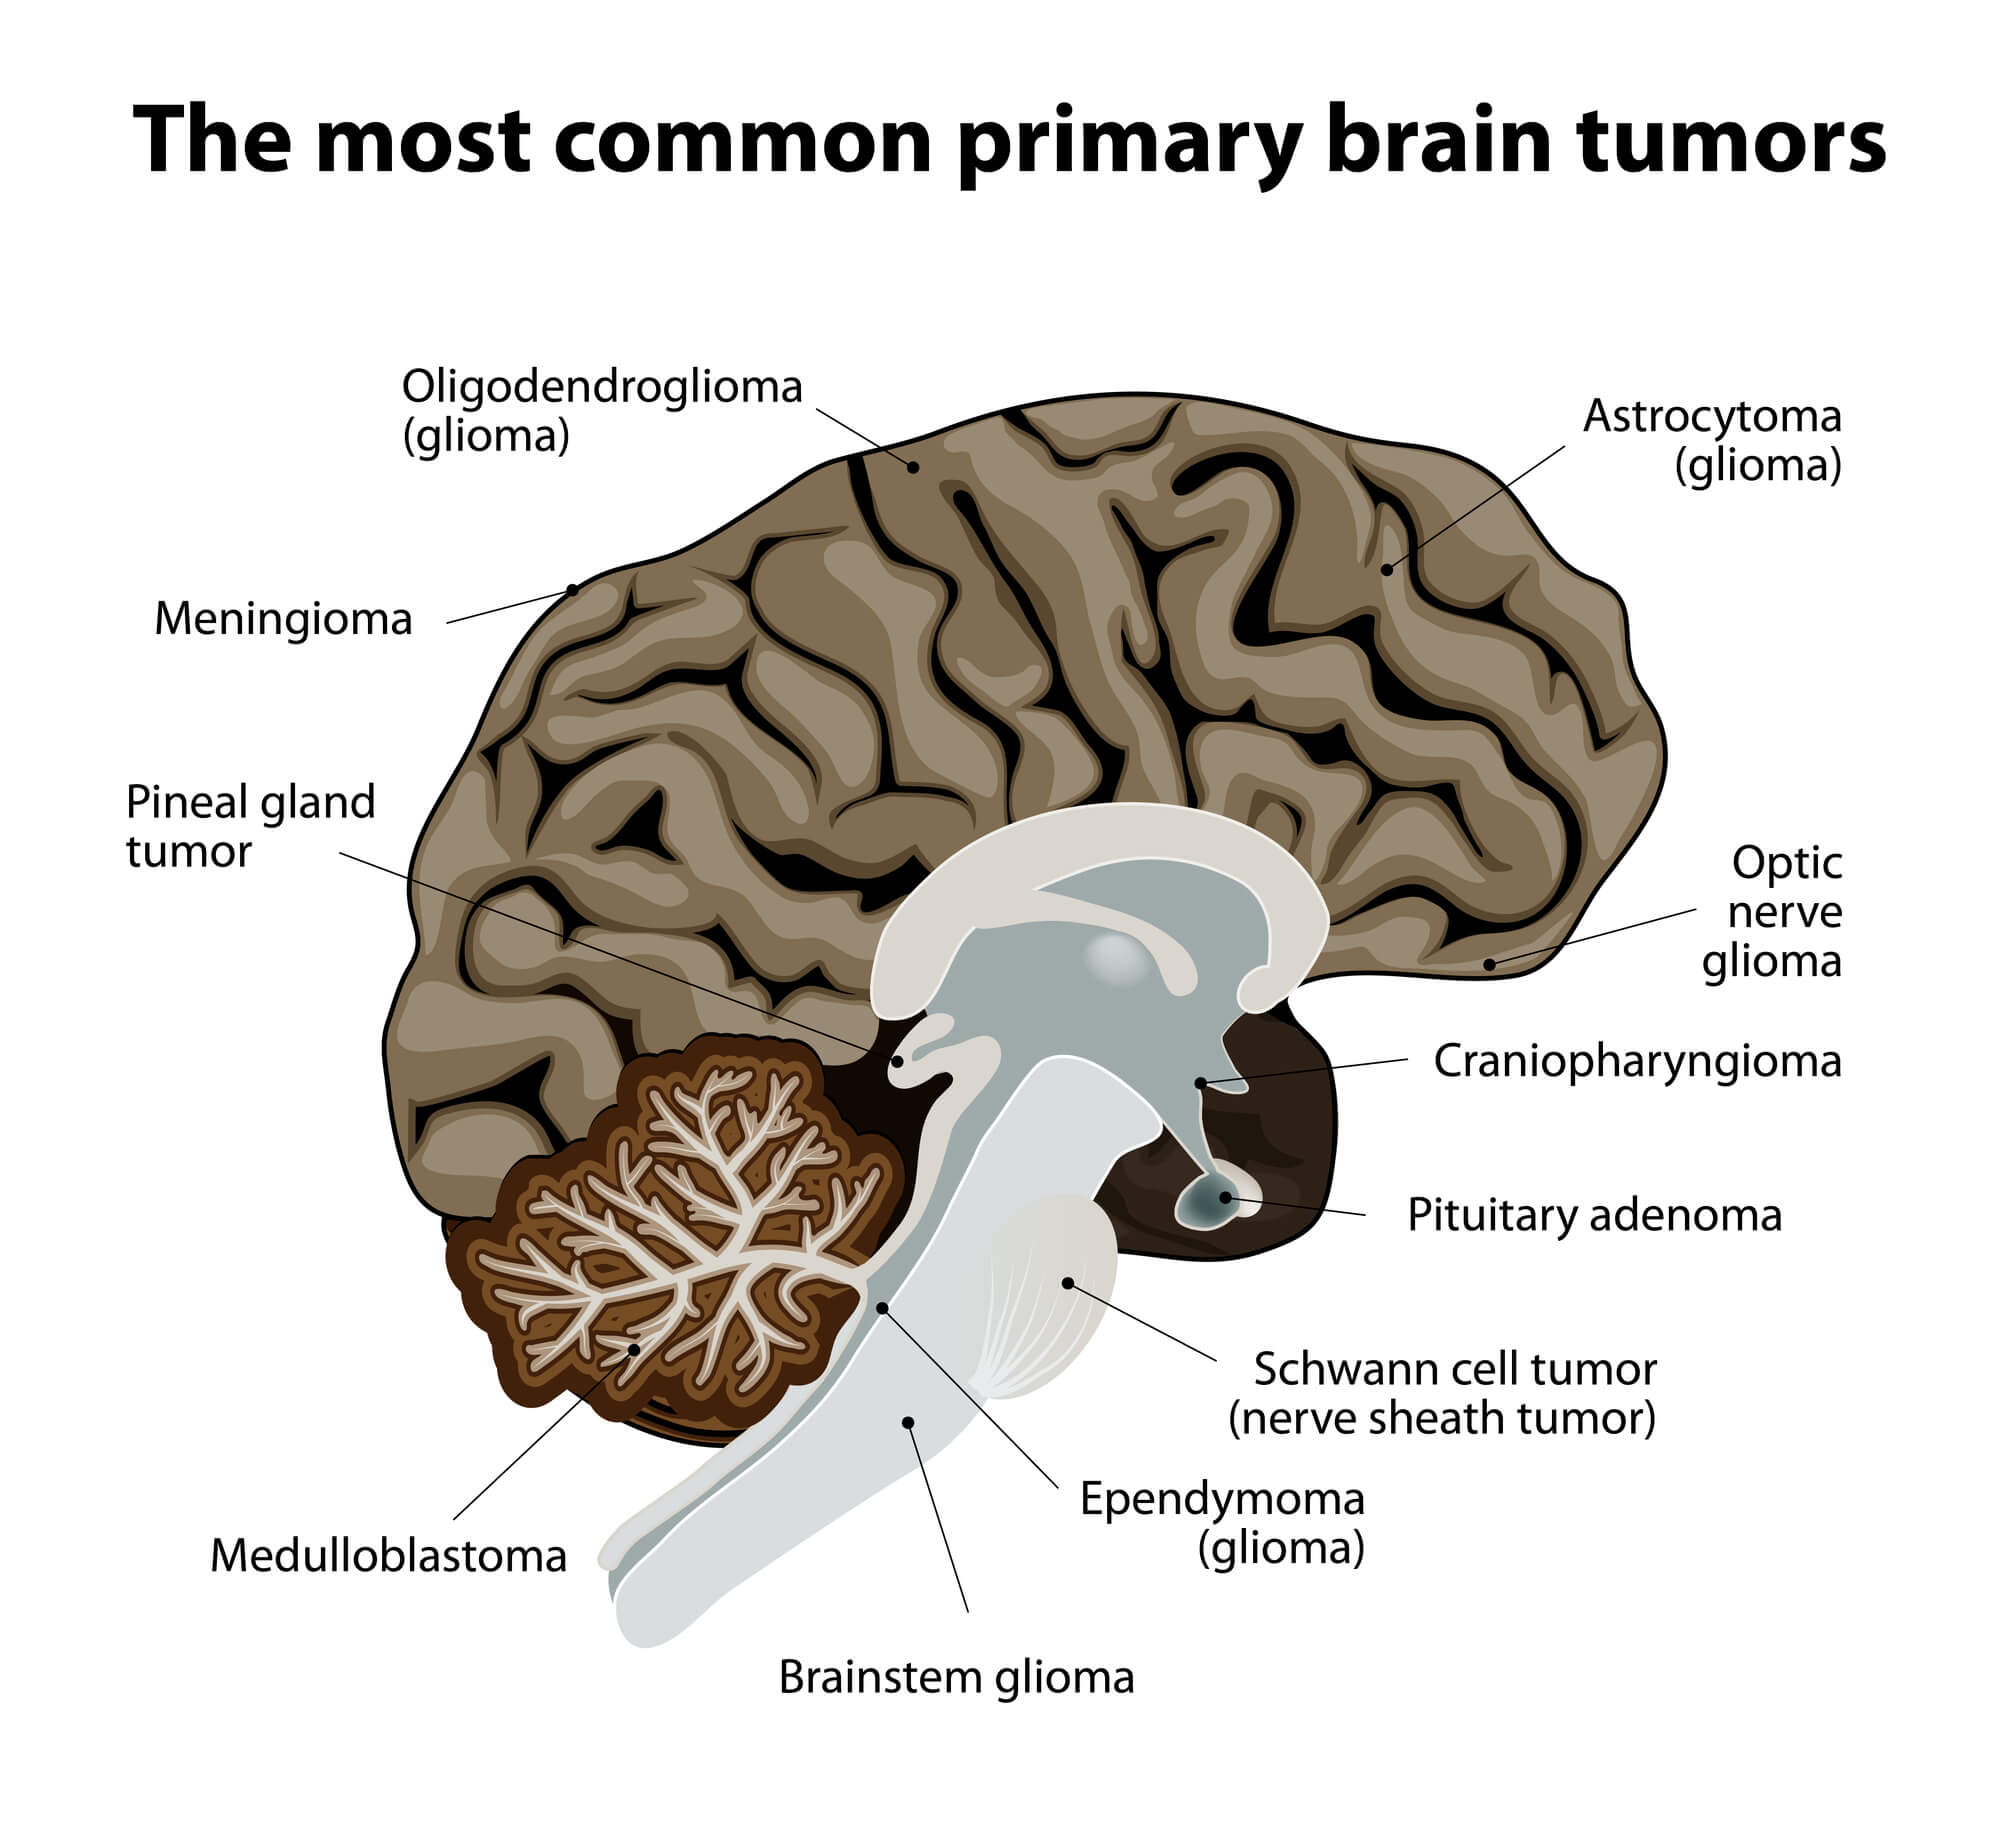 הסוגים הנפוצים ביותר של סרטן המוח.   <a href="https://depositphotos.com. ">המחשה: depositphotos.com</a>